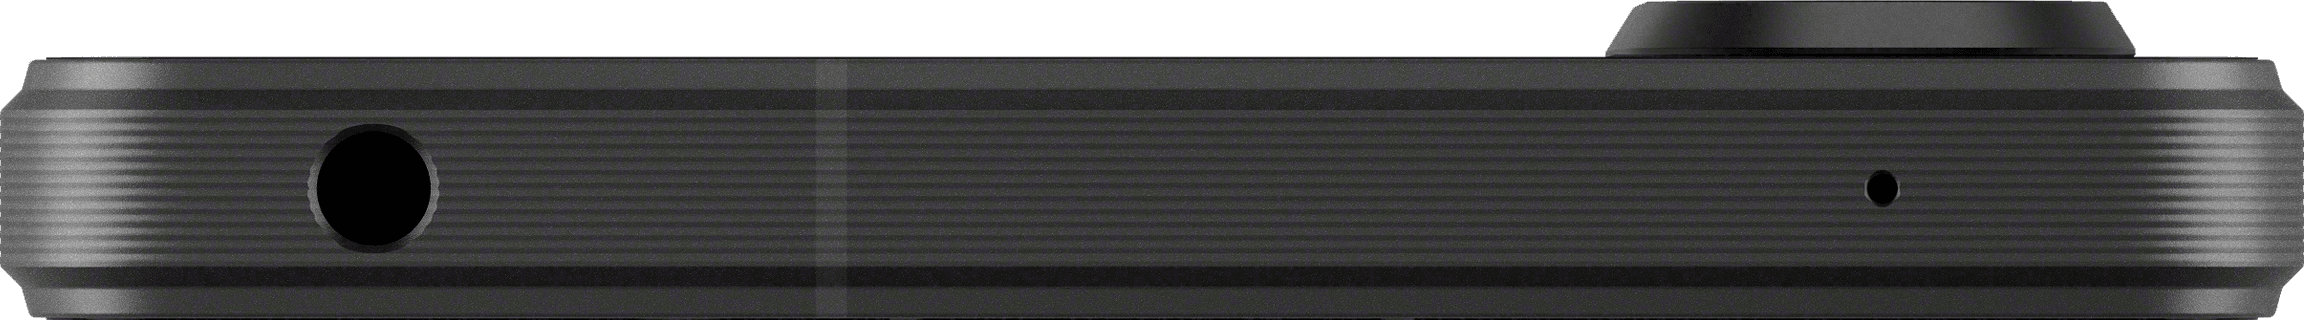 Xperia 1 VI - black - top